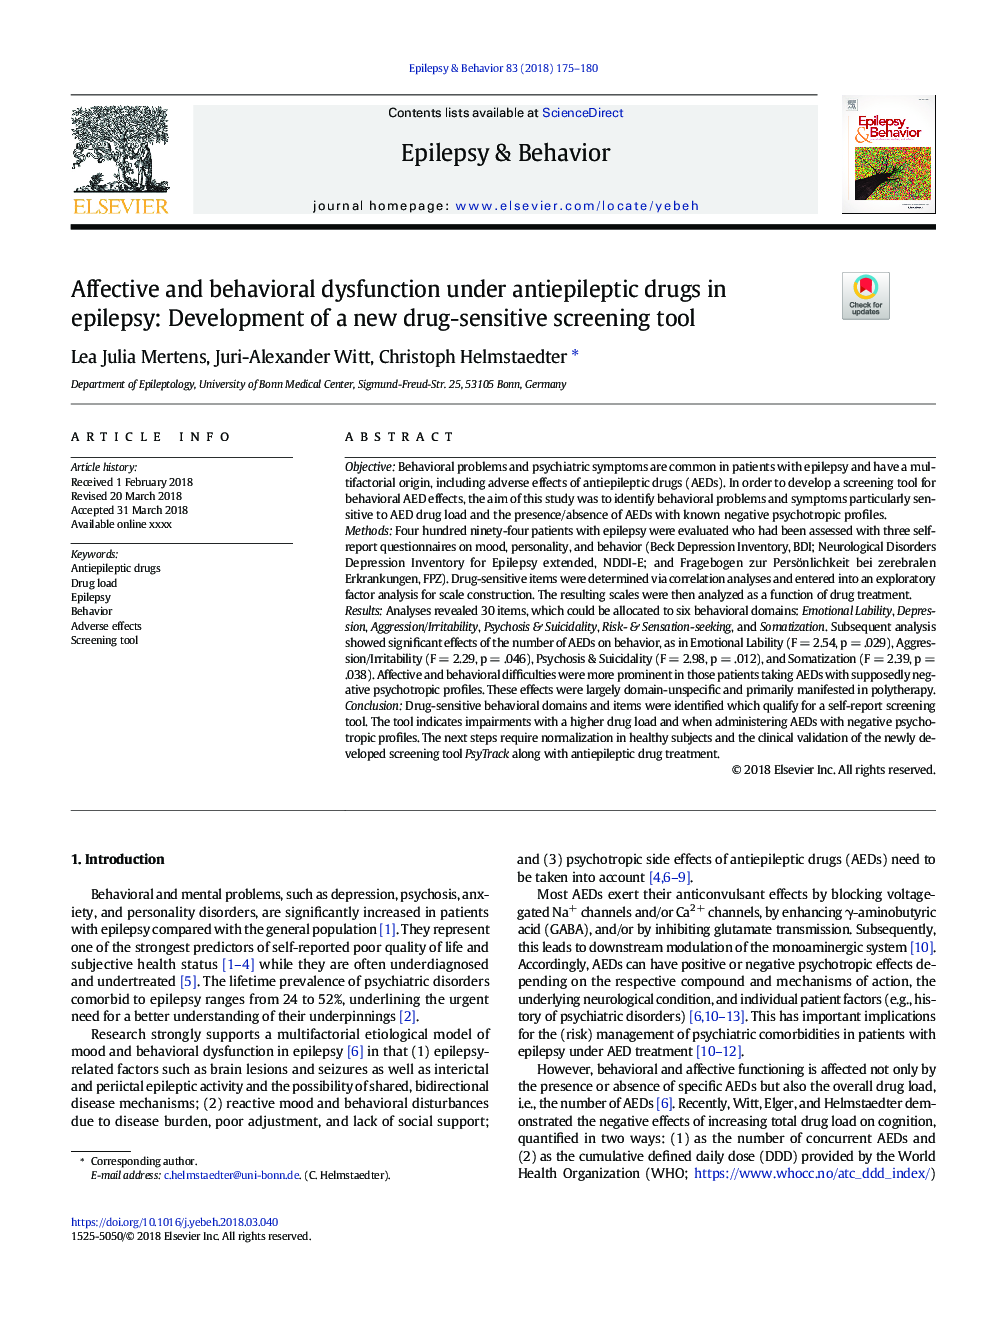 اختلال عملکرد مضر و رفتاری تحت داروهای ضد صرعی در صرع: ایجاد ابزار جدید غربالگری حساس به مواد مخدر 